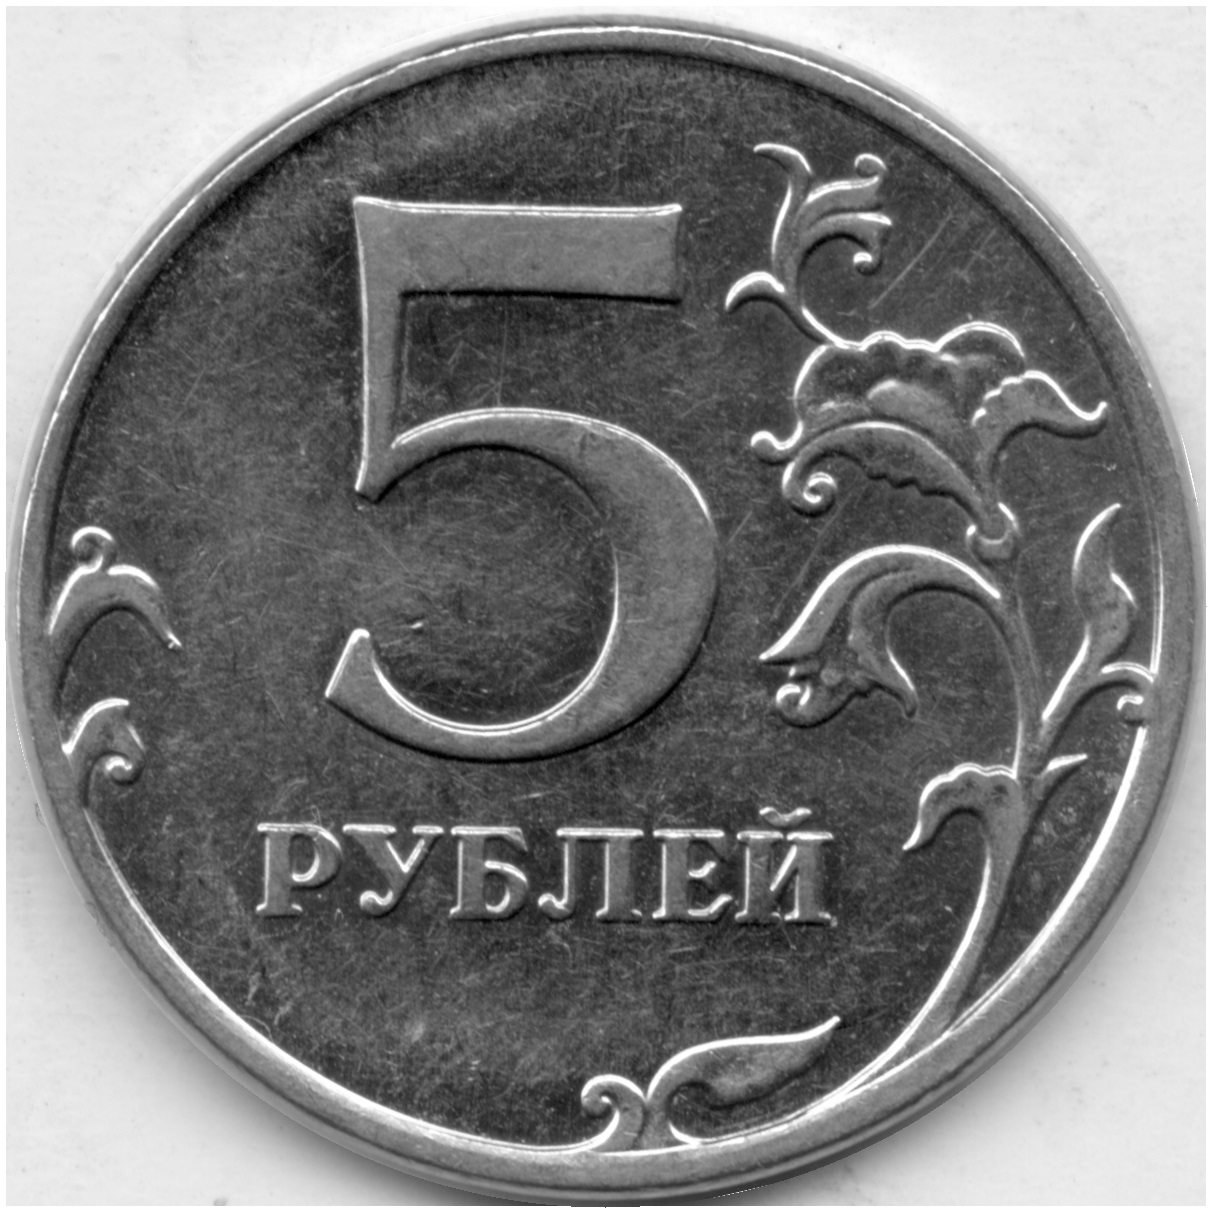 75 рублей 60. 5 Рублей 2012 ММД. 5 Рублей. 5 Рублей 2012 года ММД. 5 Рублей бумажные.